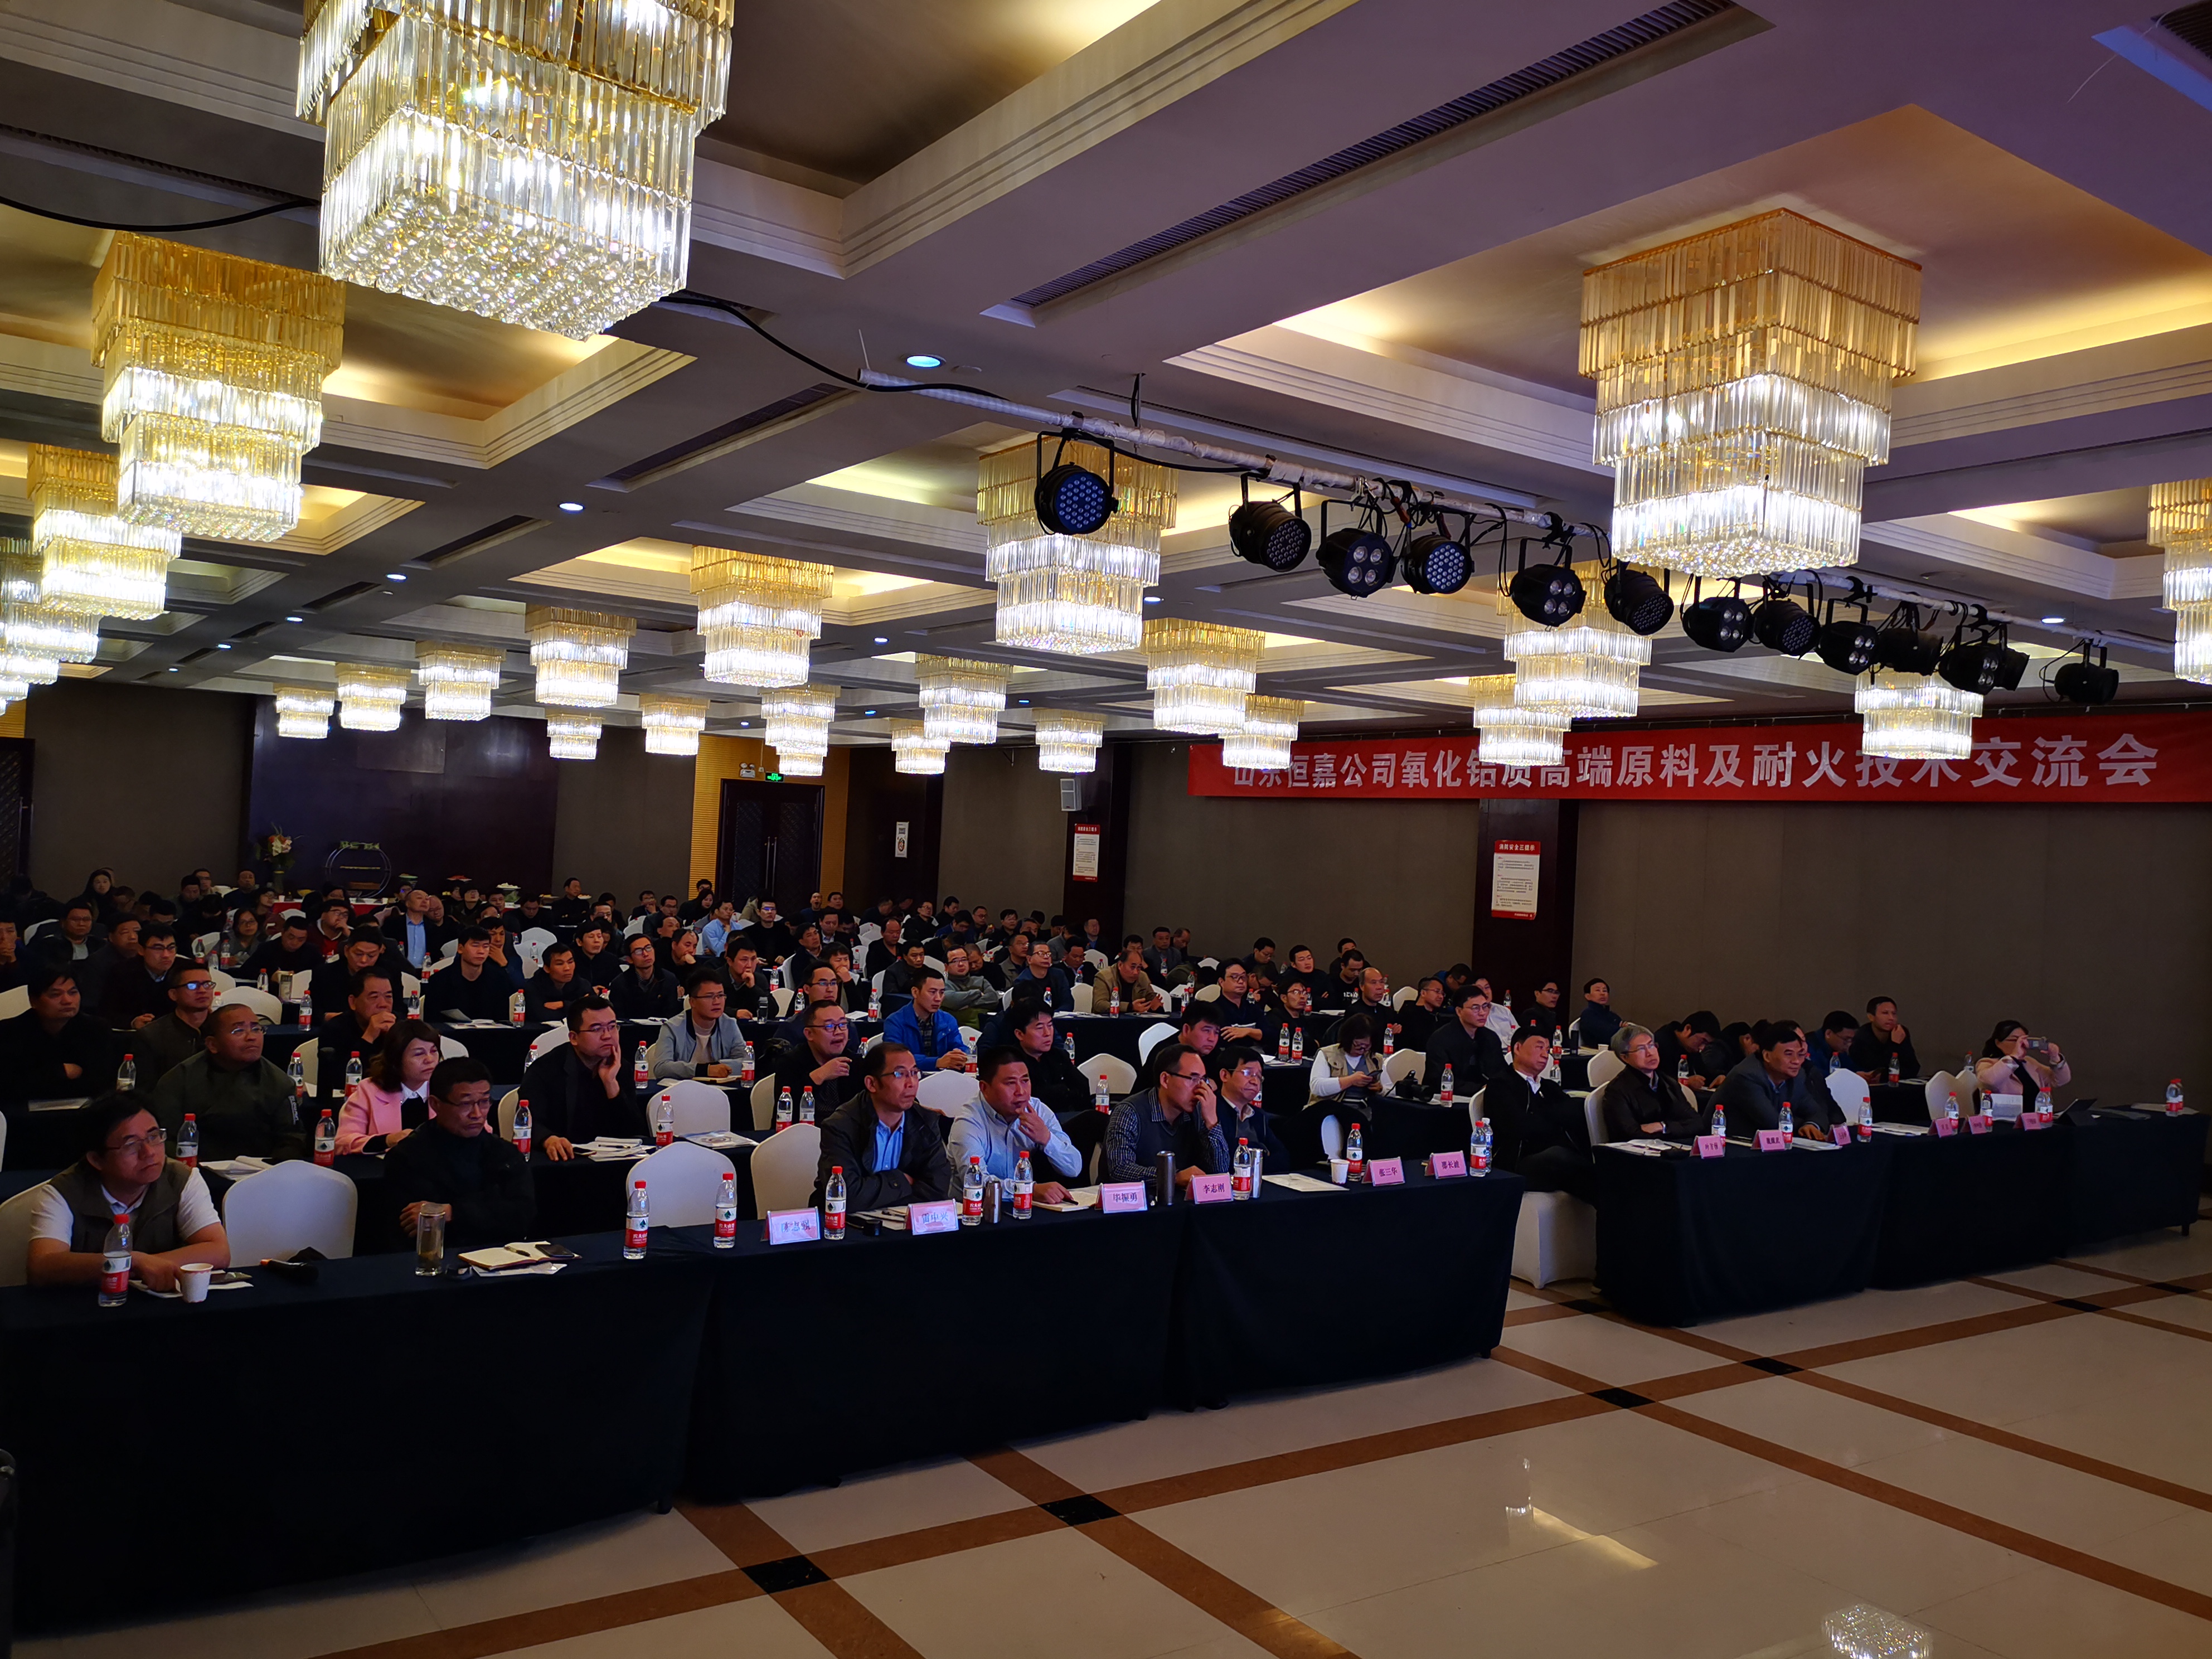 恒嘉高純度アルミナ質ハイエンド原料及び耐火技術交流会は河南省コン義で円満に開催されました。